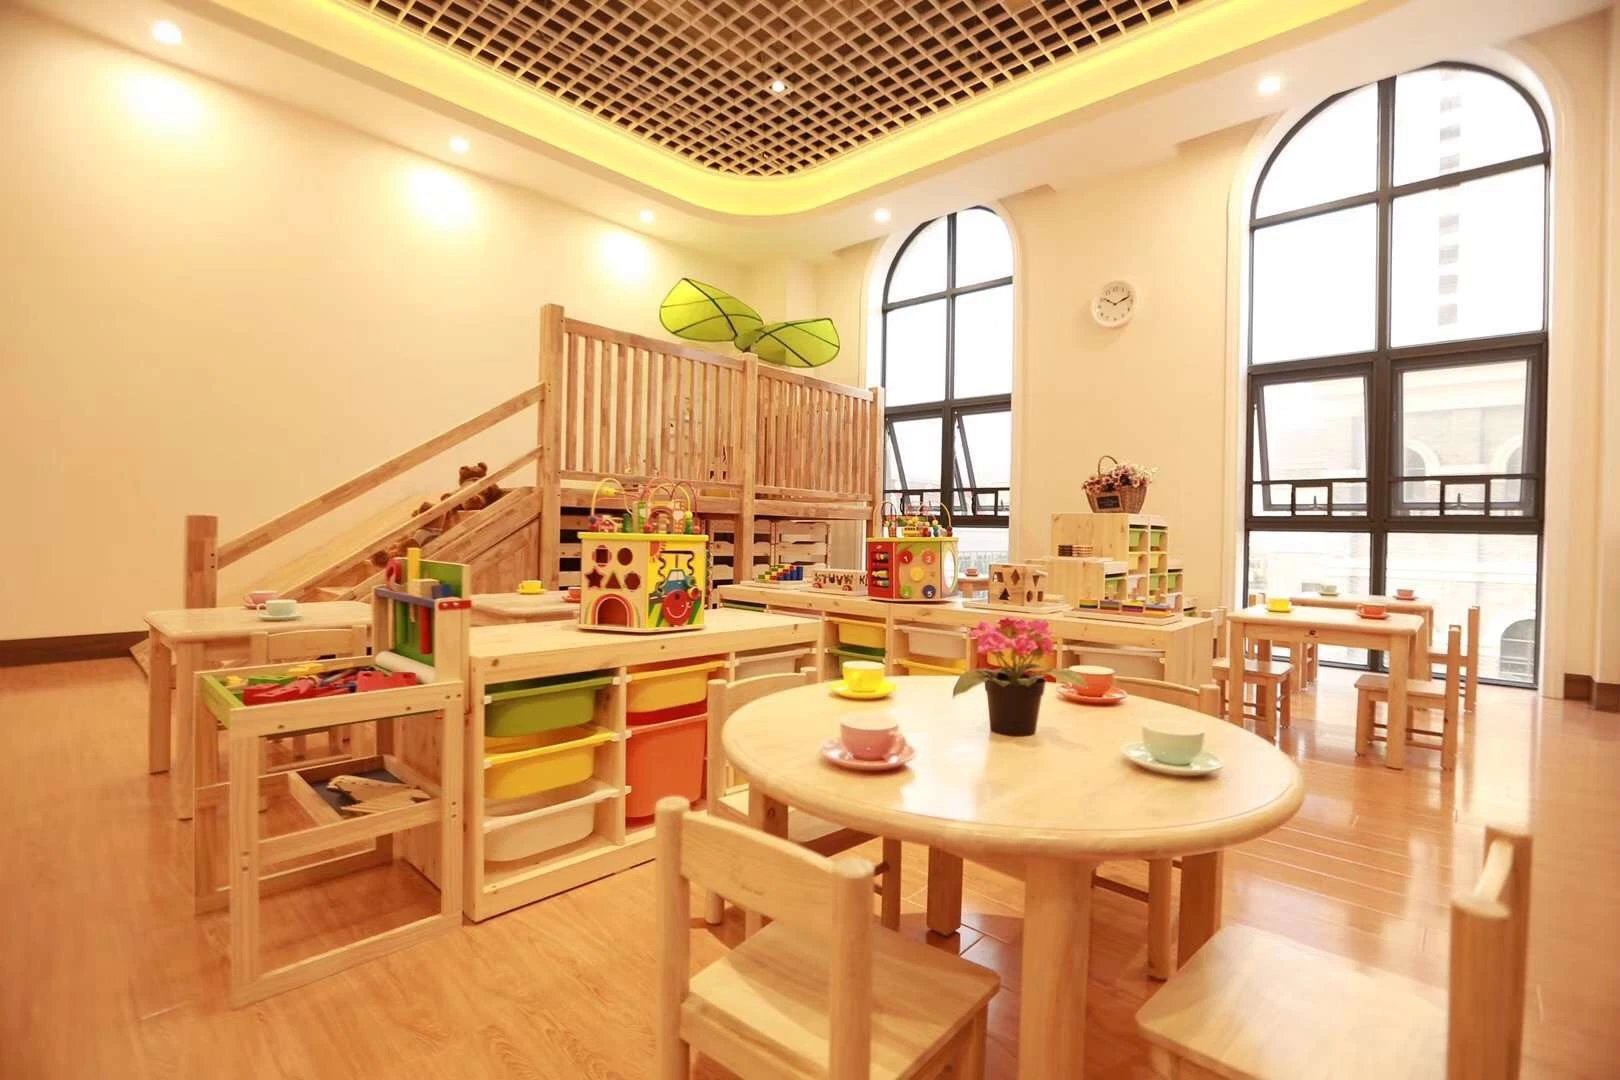 Crianças Chinesas mobiliário, mobiliário de crianças, aula as crianças do mobiliário de época, mobiliário de jardim de infância Fornecedor